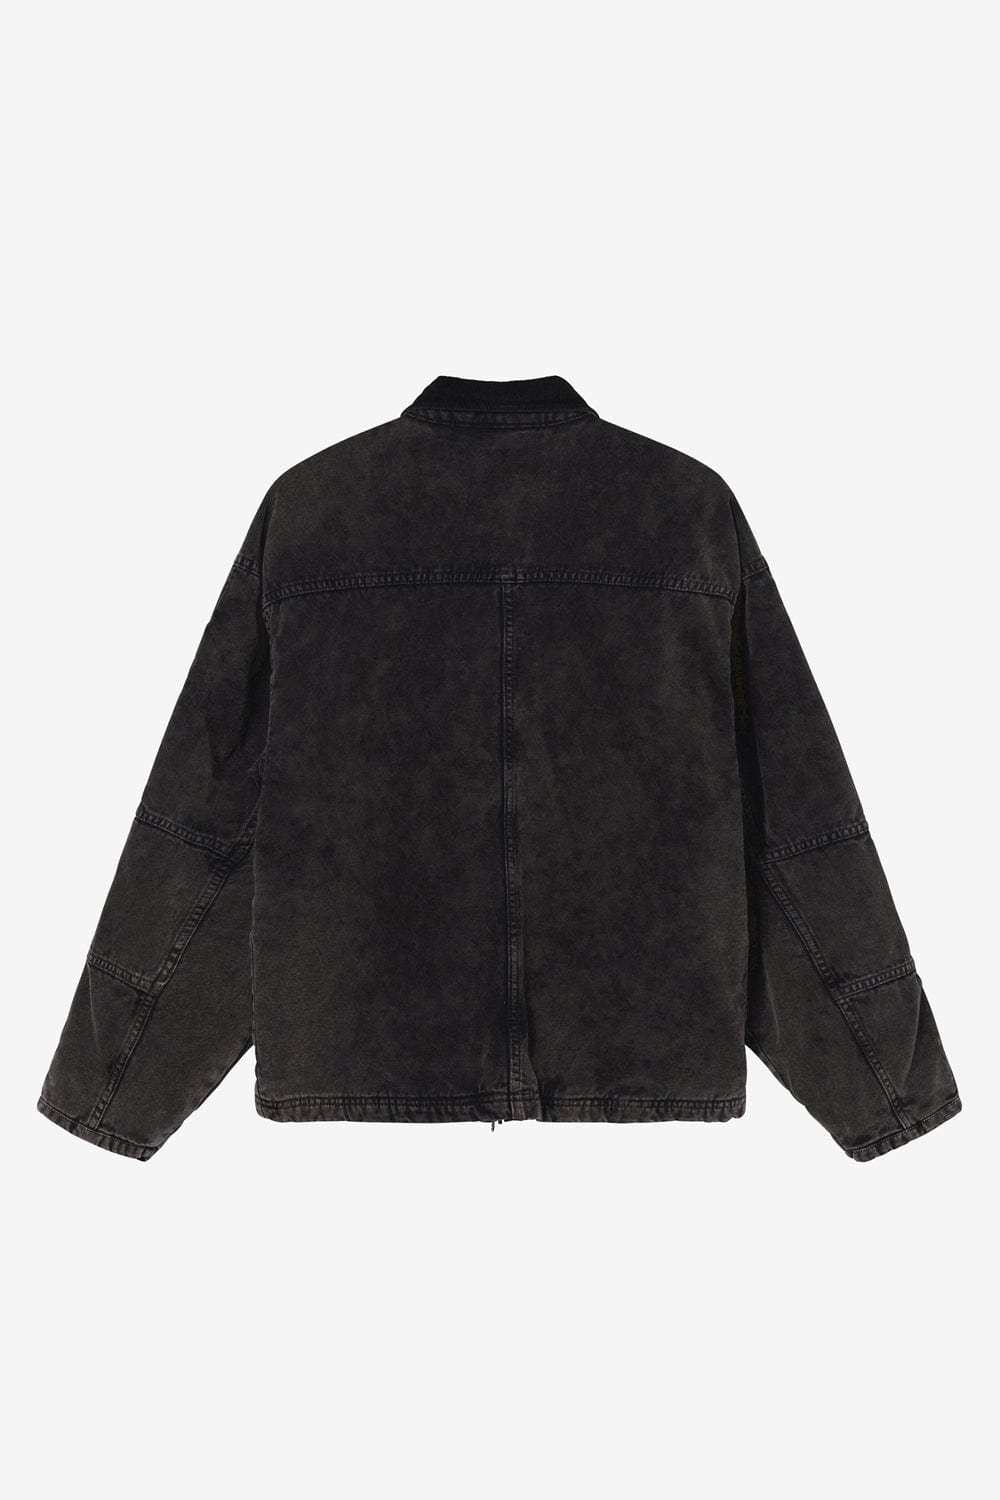 Stussy Washed Canvas Shop Jacket (Black) - Commonwealth